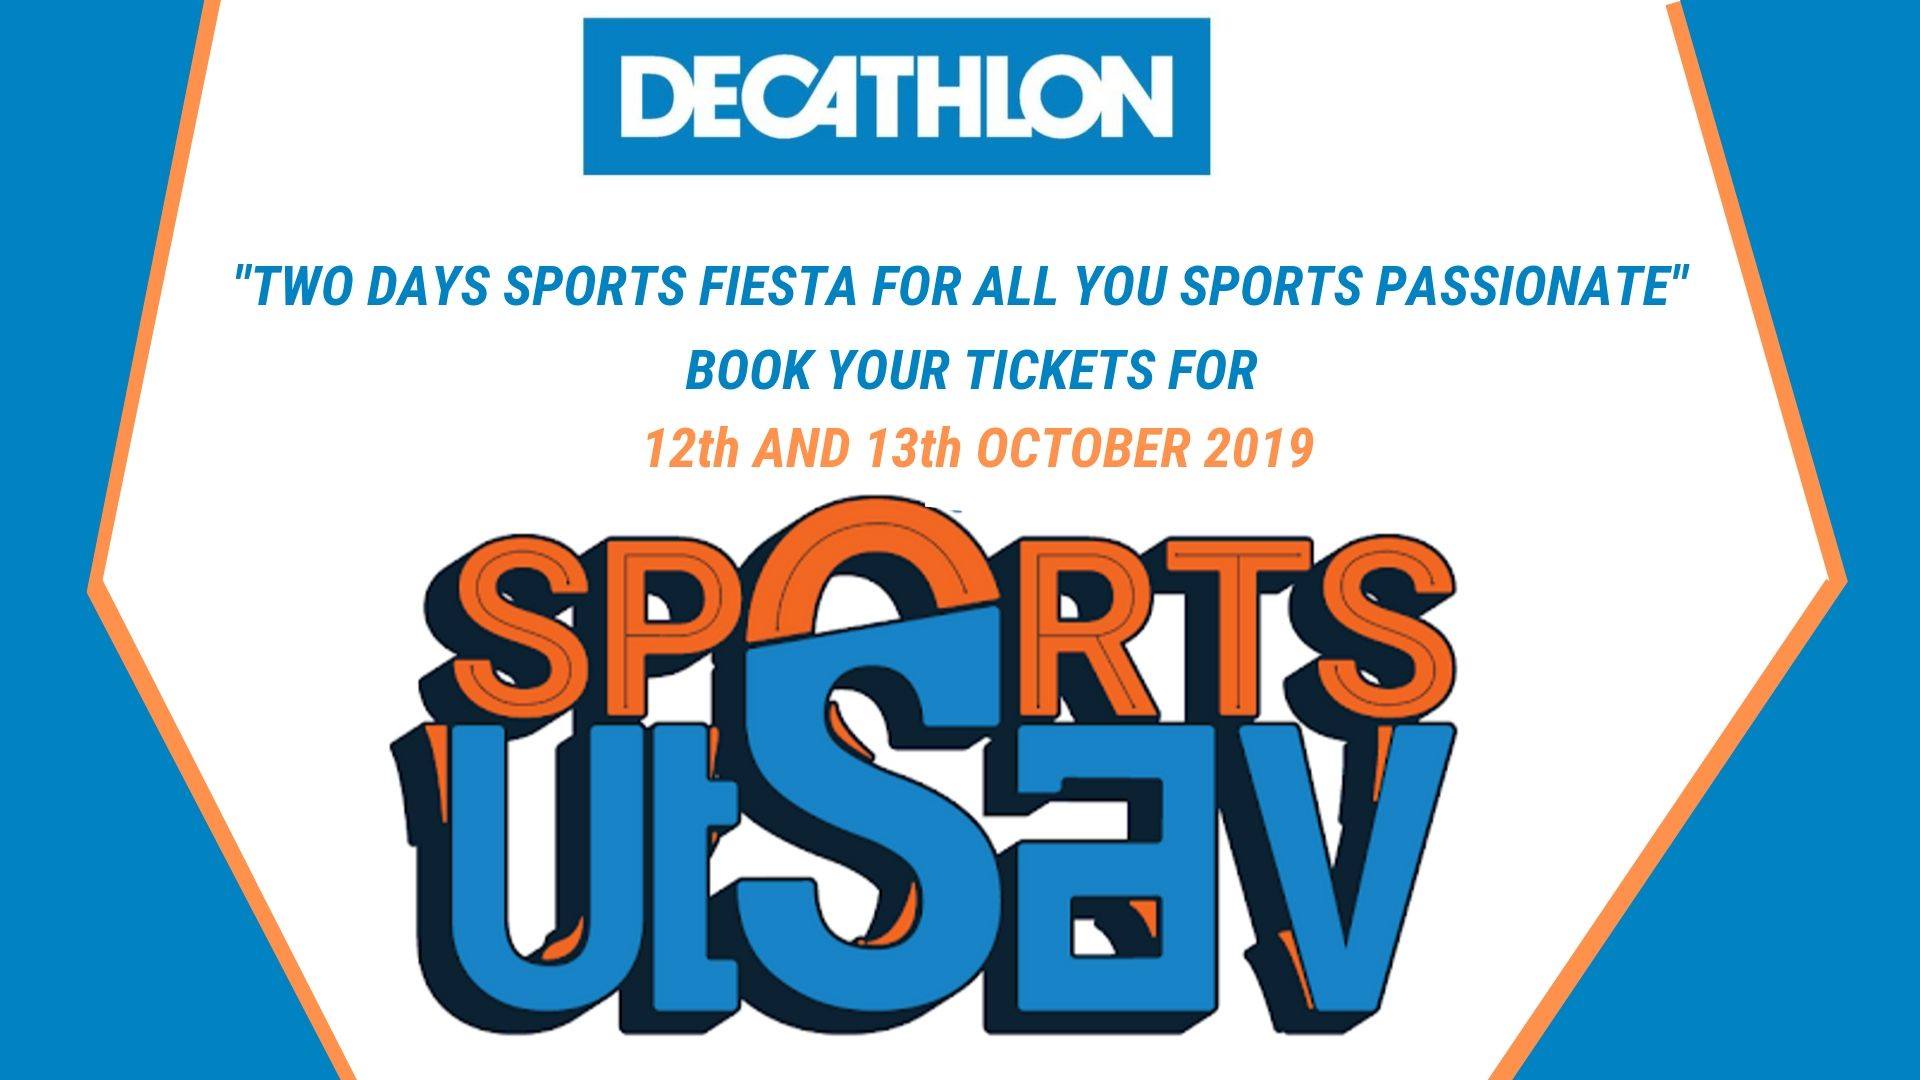 decathlon sports utsav registration